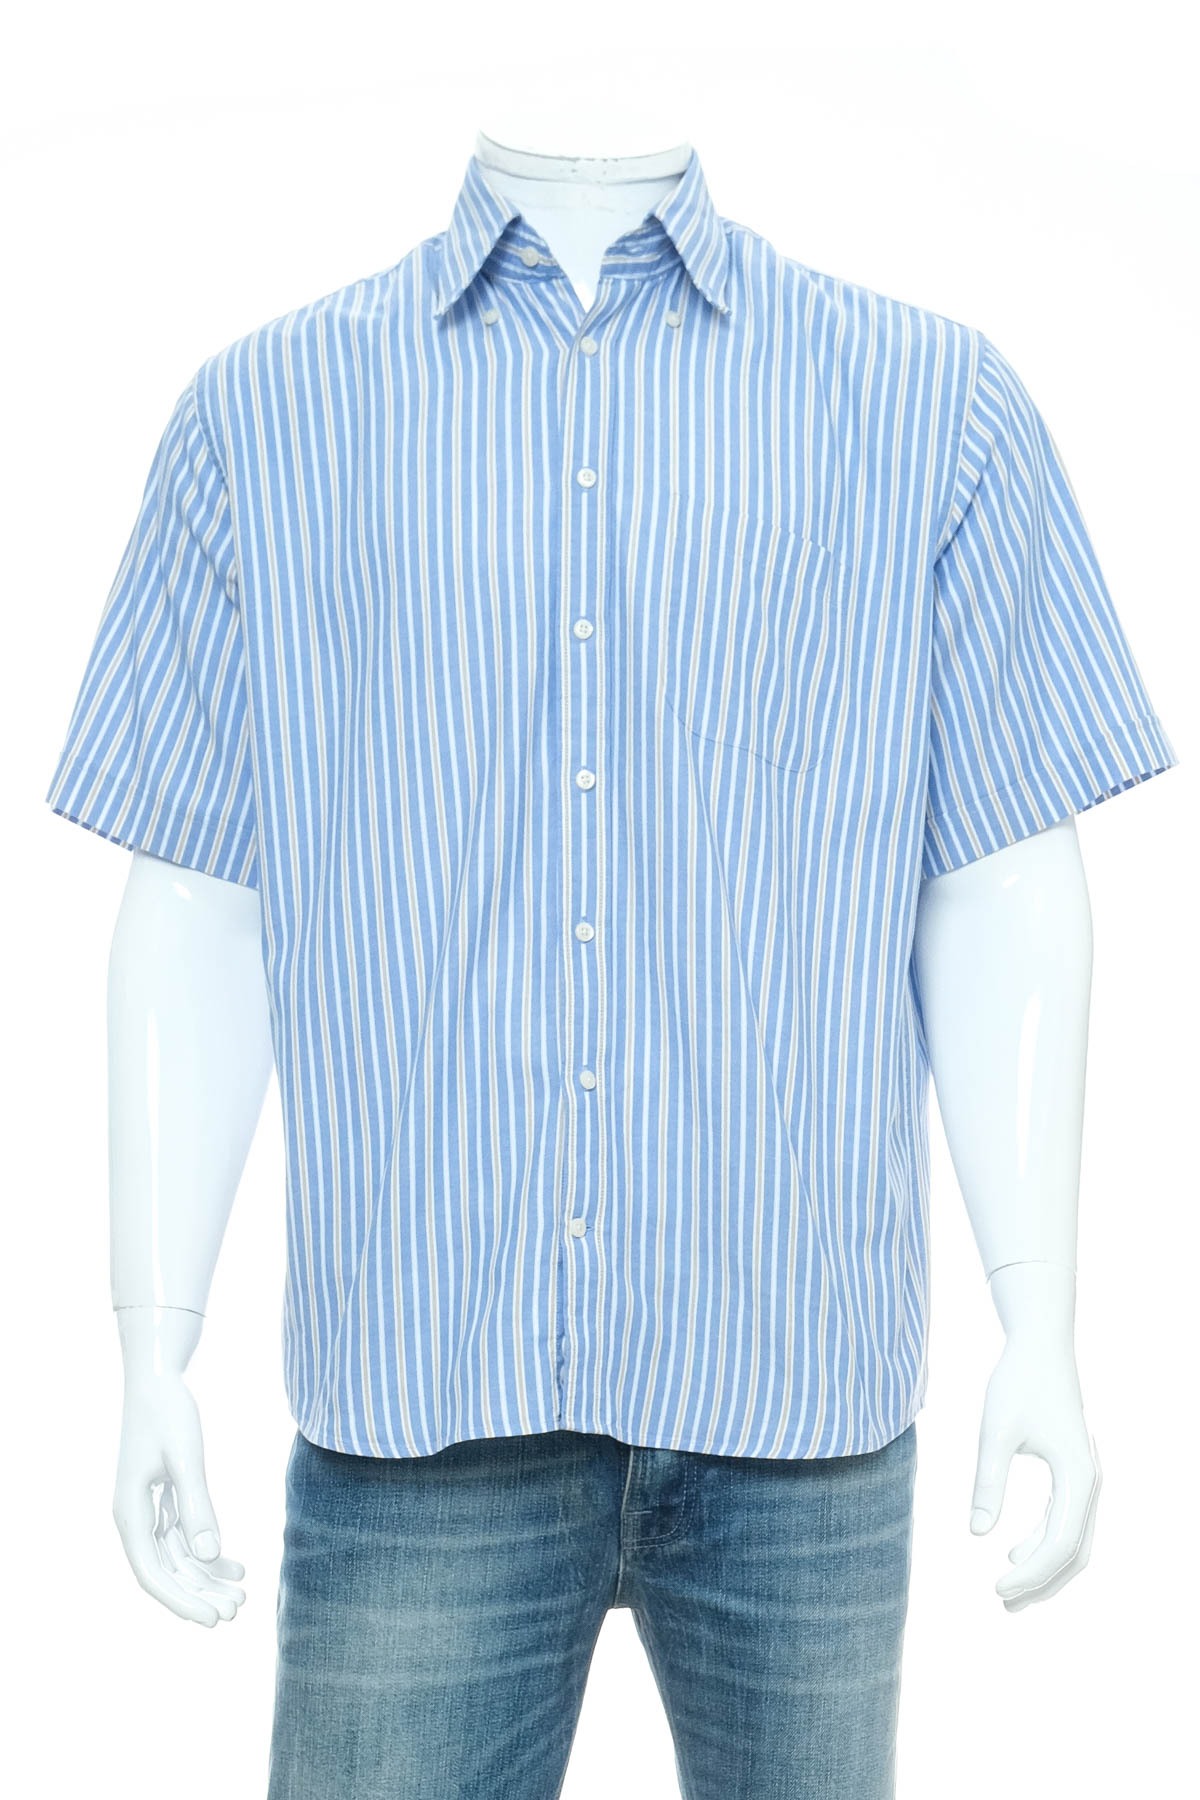 Ανδρικό πουκάμισο - Peter Fitch - 0